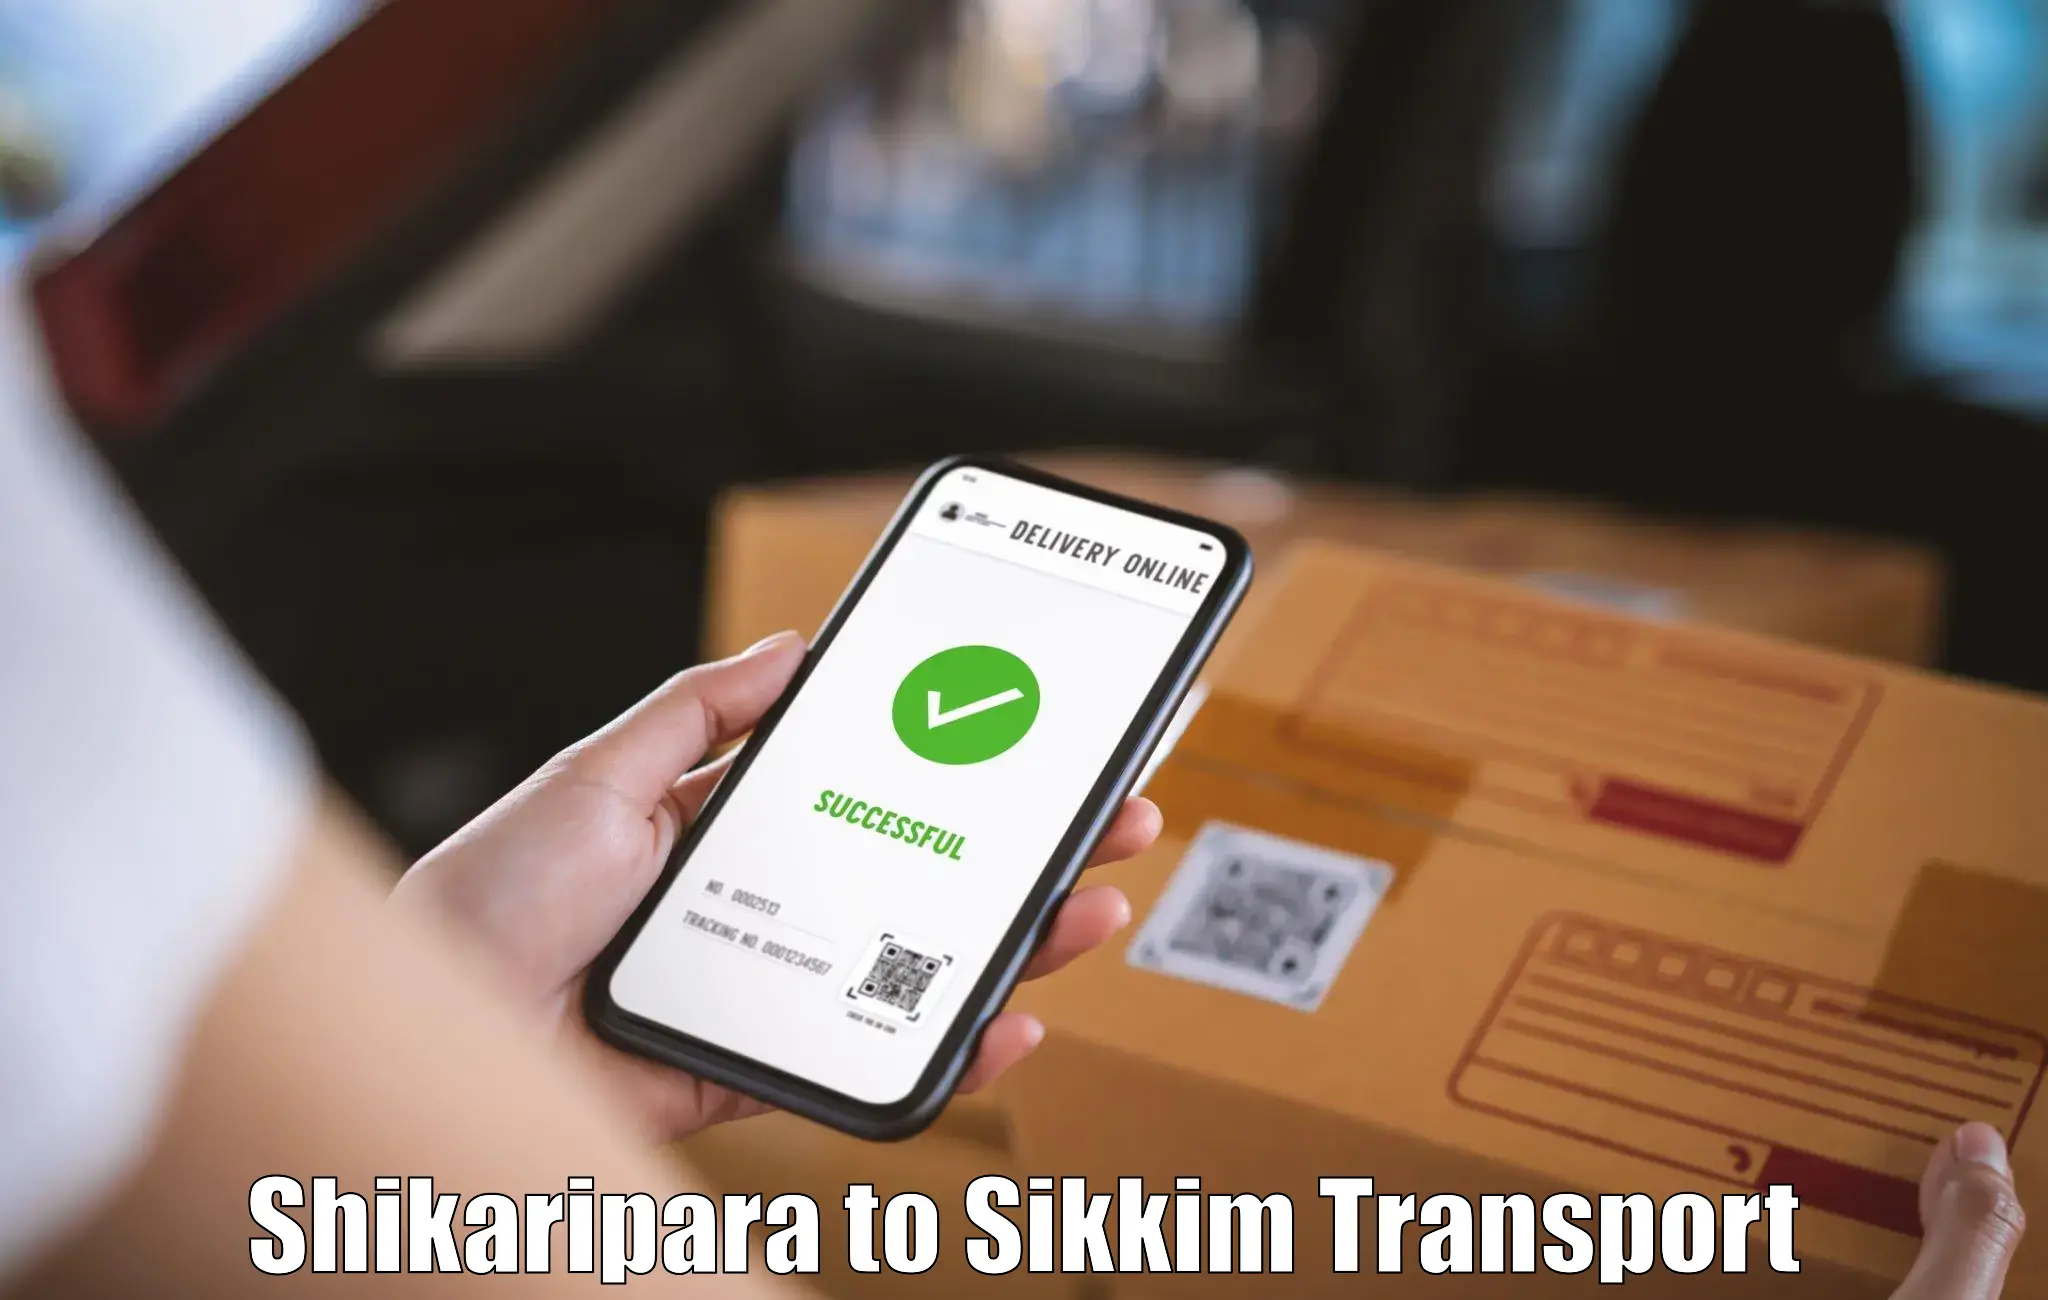 Online transport service Shikaripara to Pelling